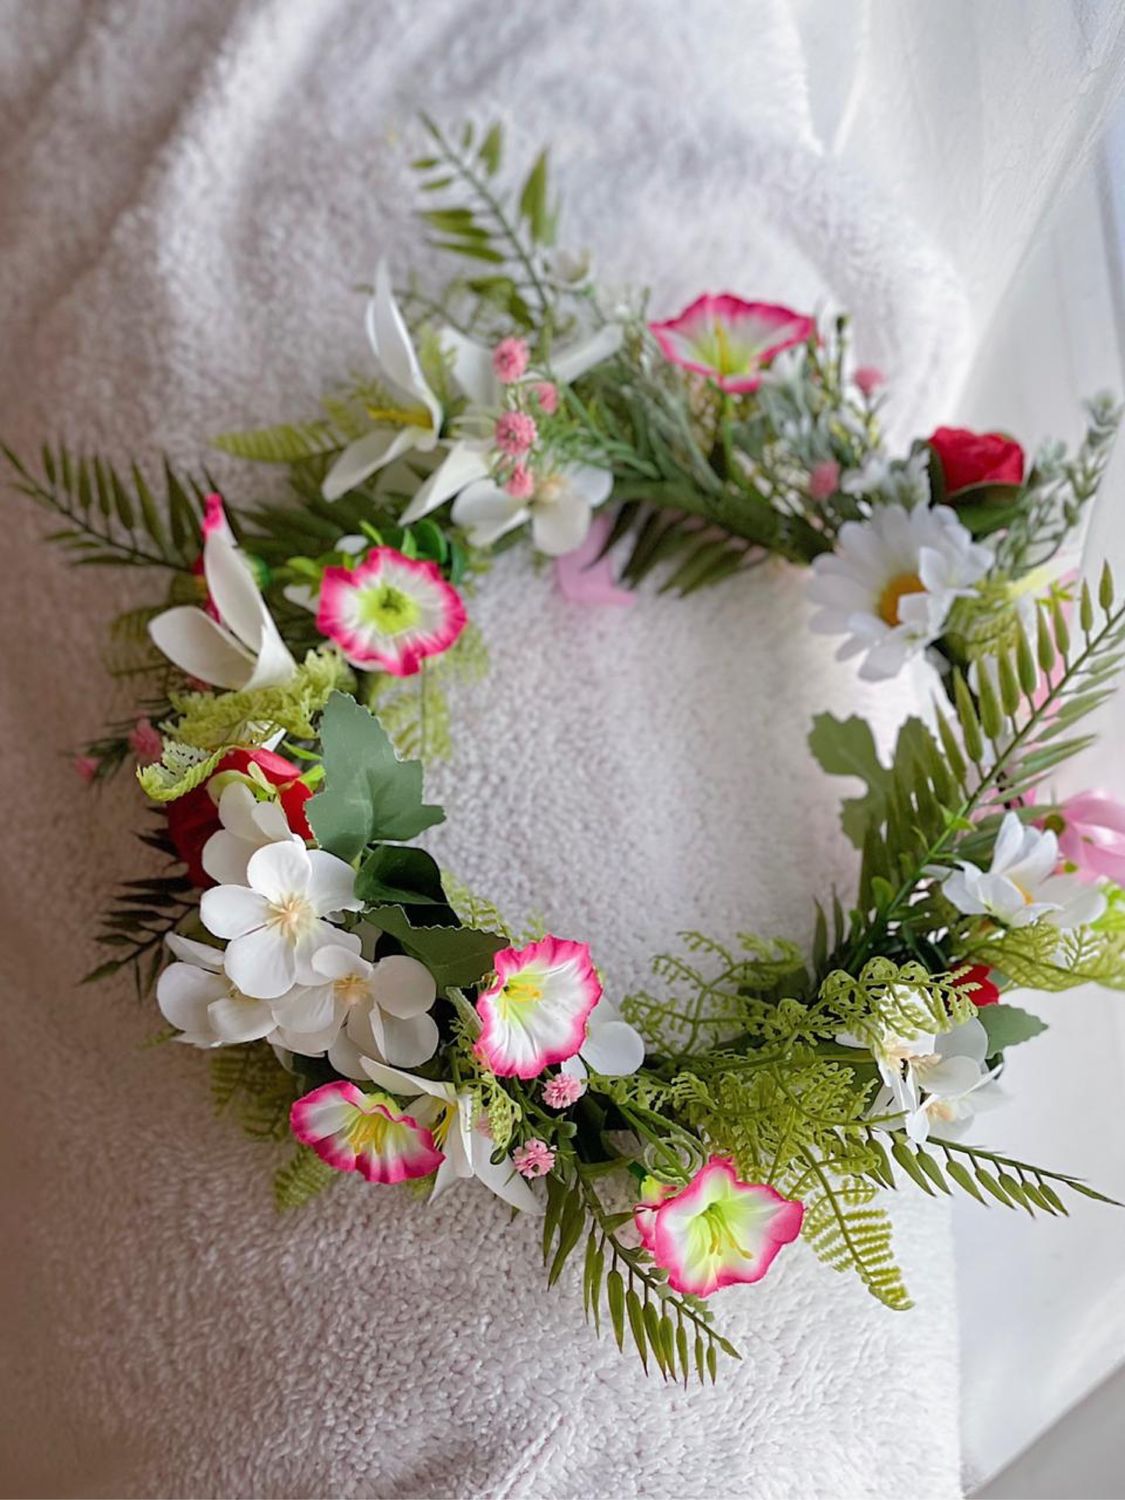 Ободок из искусственных цветов. DIY . The wreath of flowers